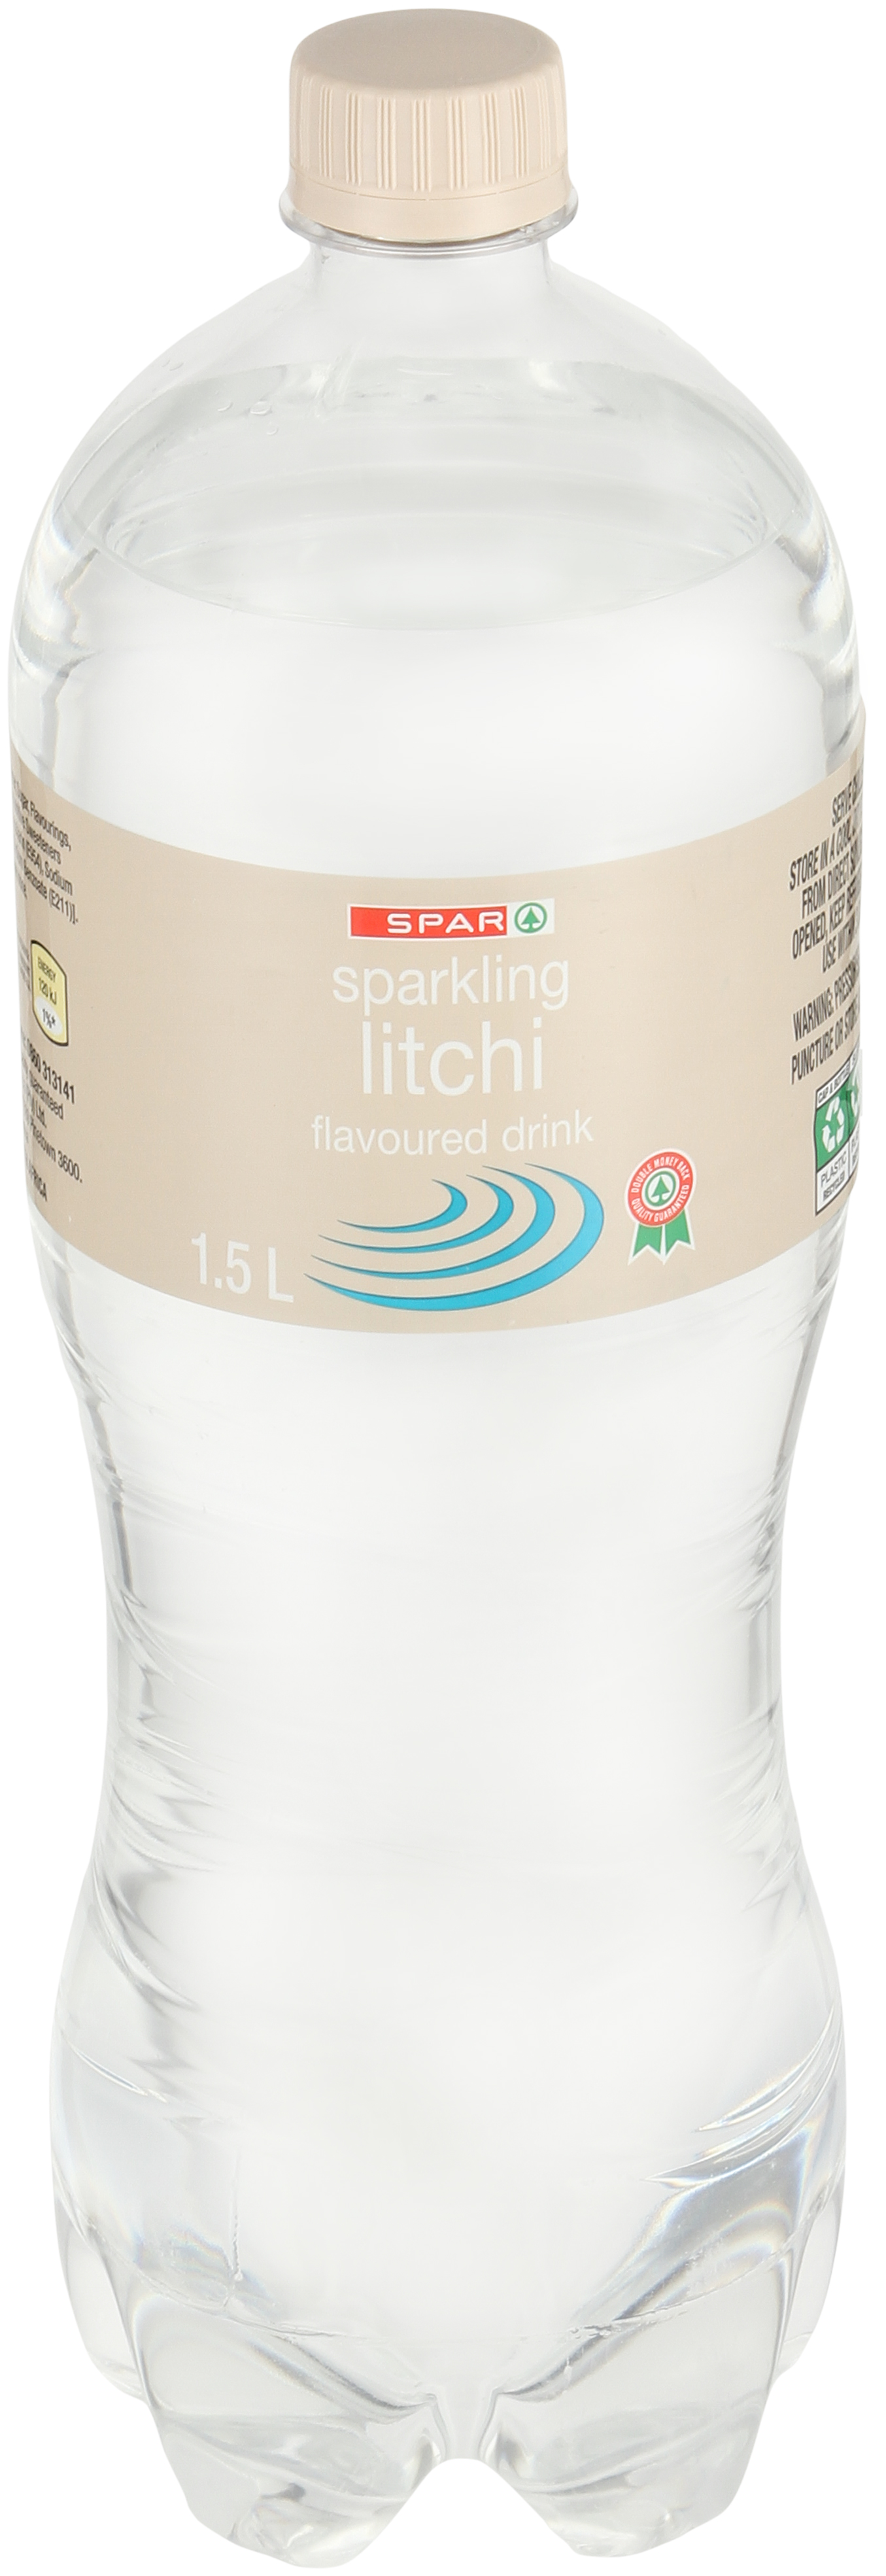 sparkling flavoured drink litchi       